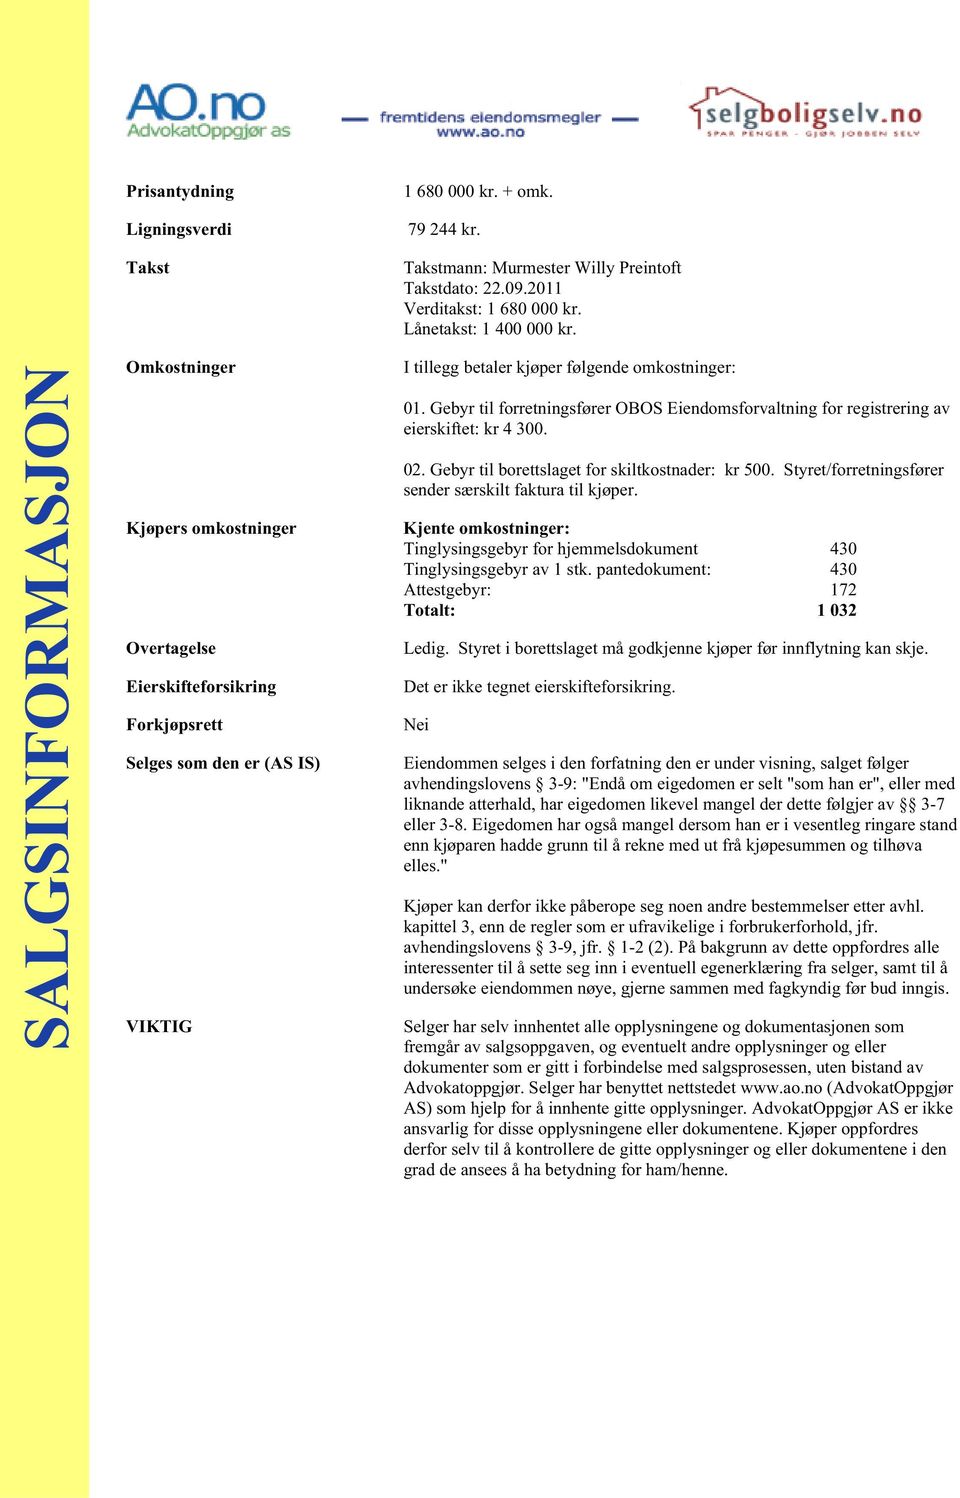 Gebyr til forretningsfører OBOS Eiendomsforvaltning for registrering av eierskiftet: kr 4 300. 02. Gebyr til borettslaget for skiltkostnader: kr 500.